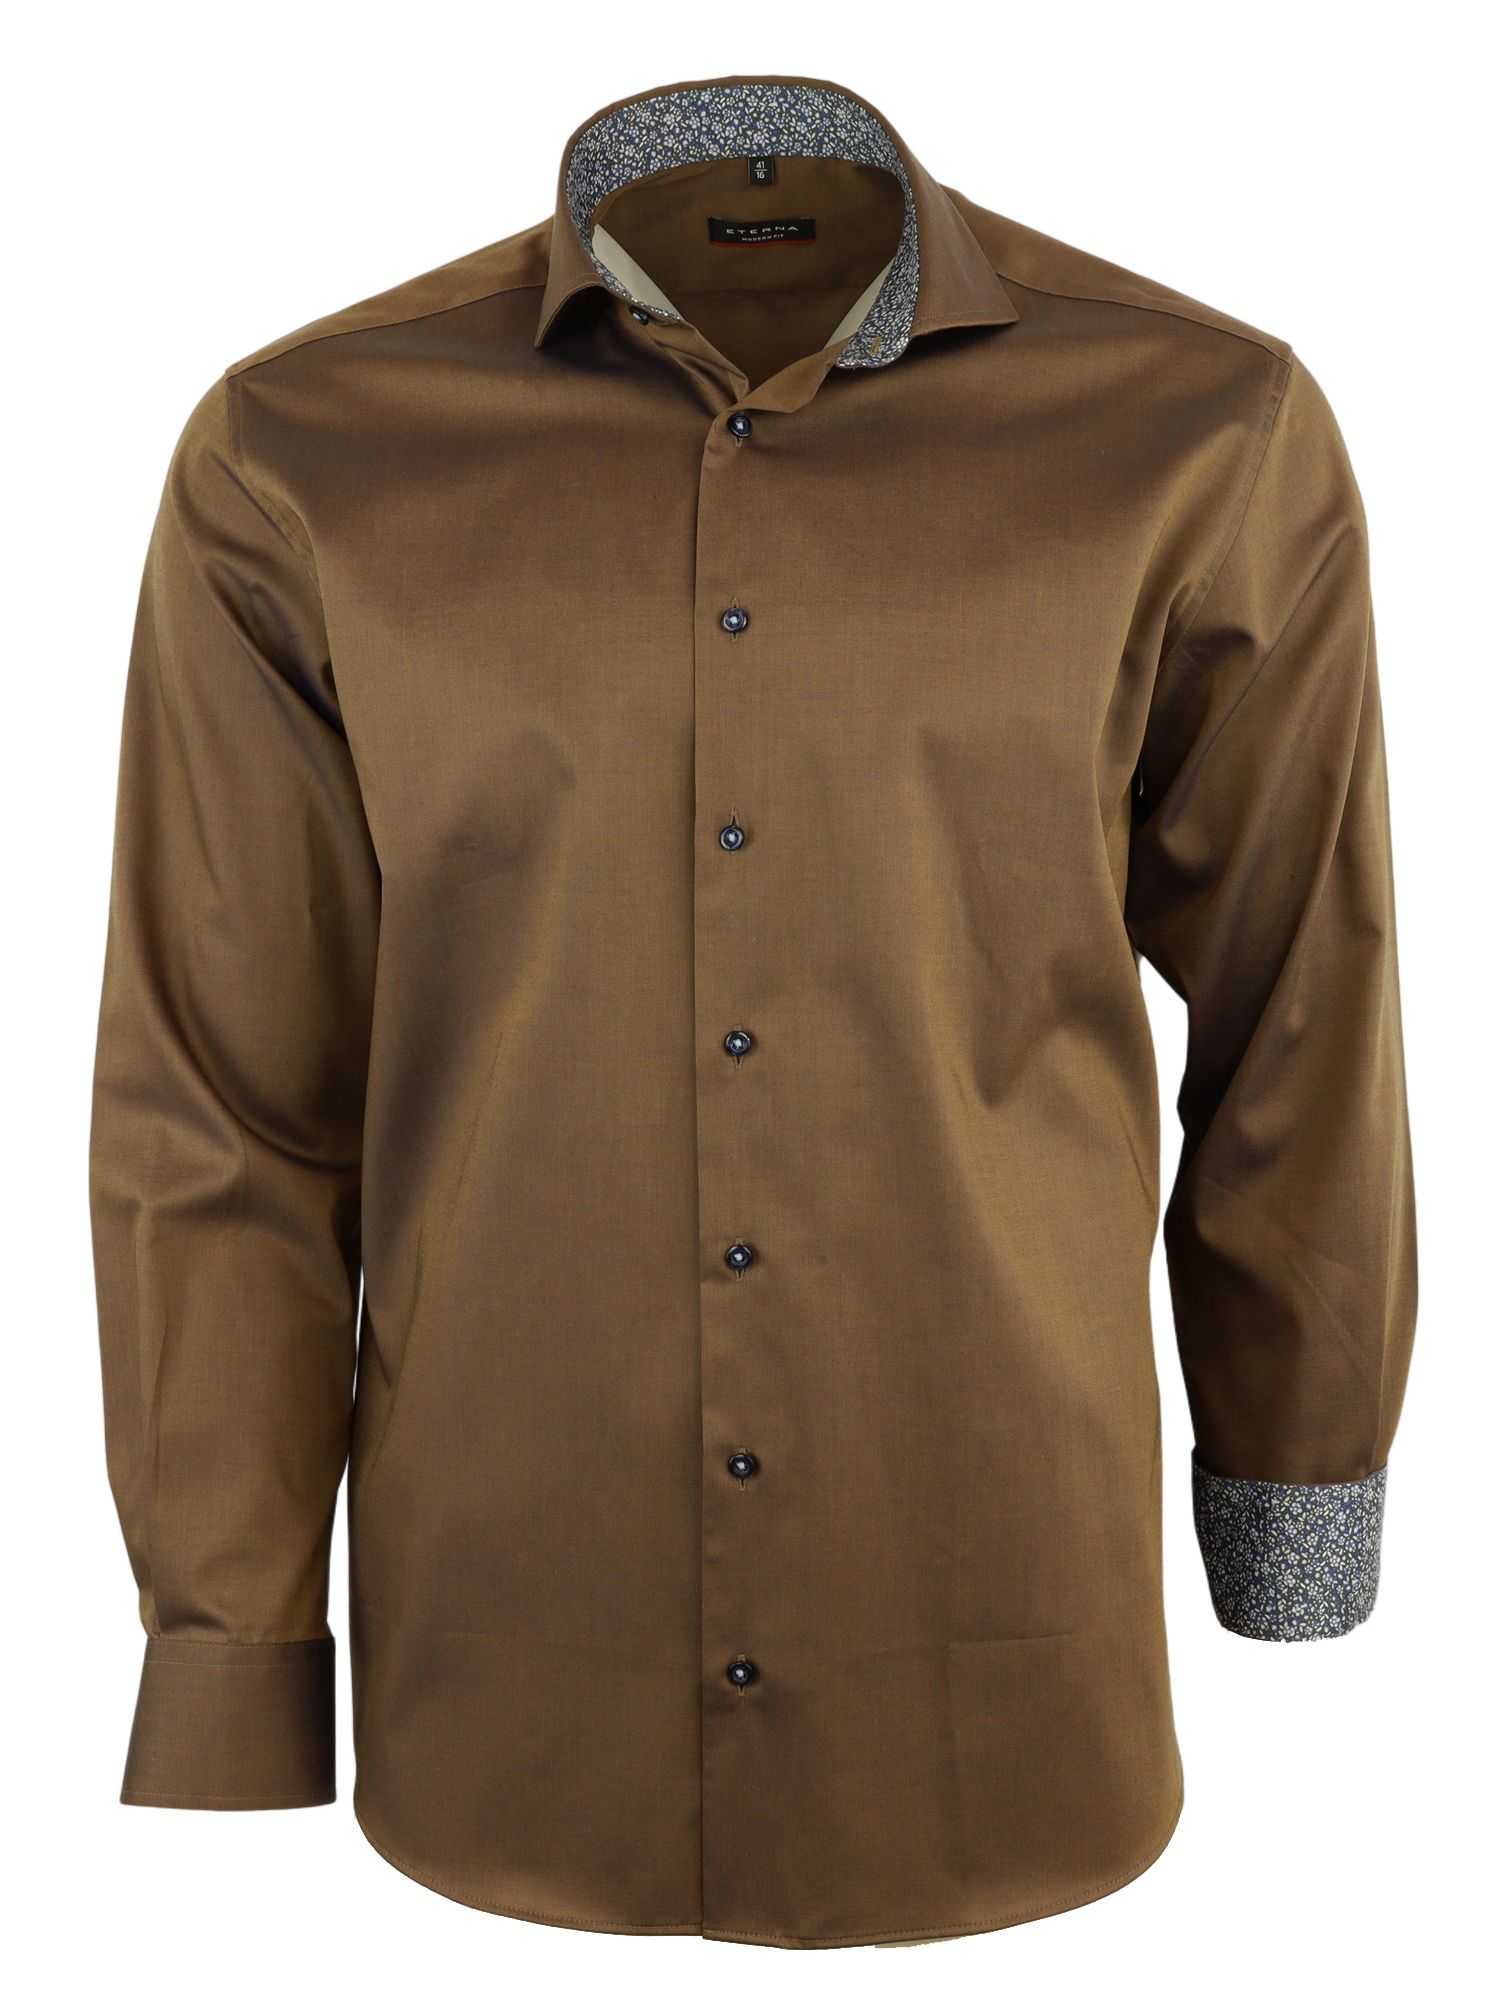 Мужская рубашка ETERNA, коричневая, цвет коричневый, размер 54 - фото 1